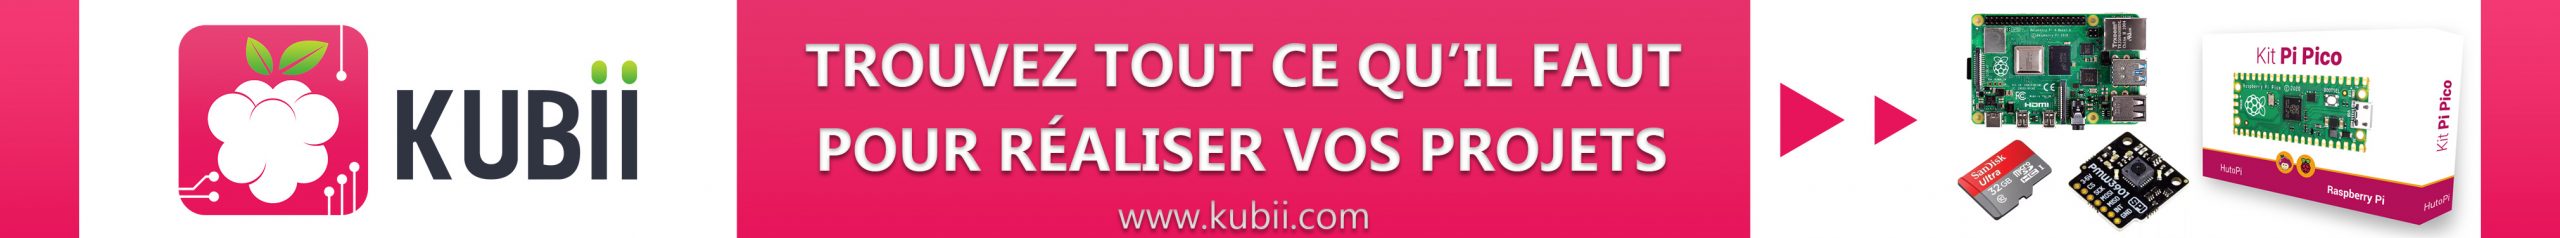 Bannière de publicité pour Kubii - Mise en place avril 2022